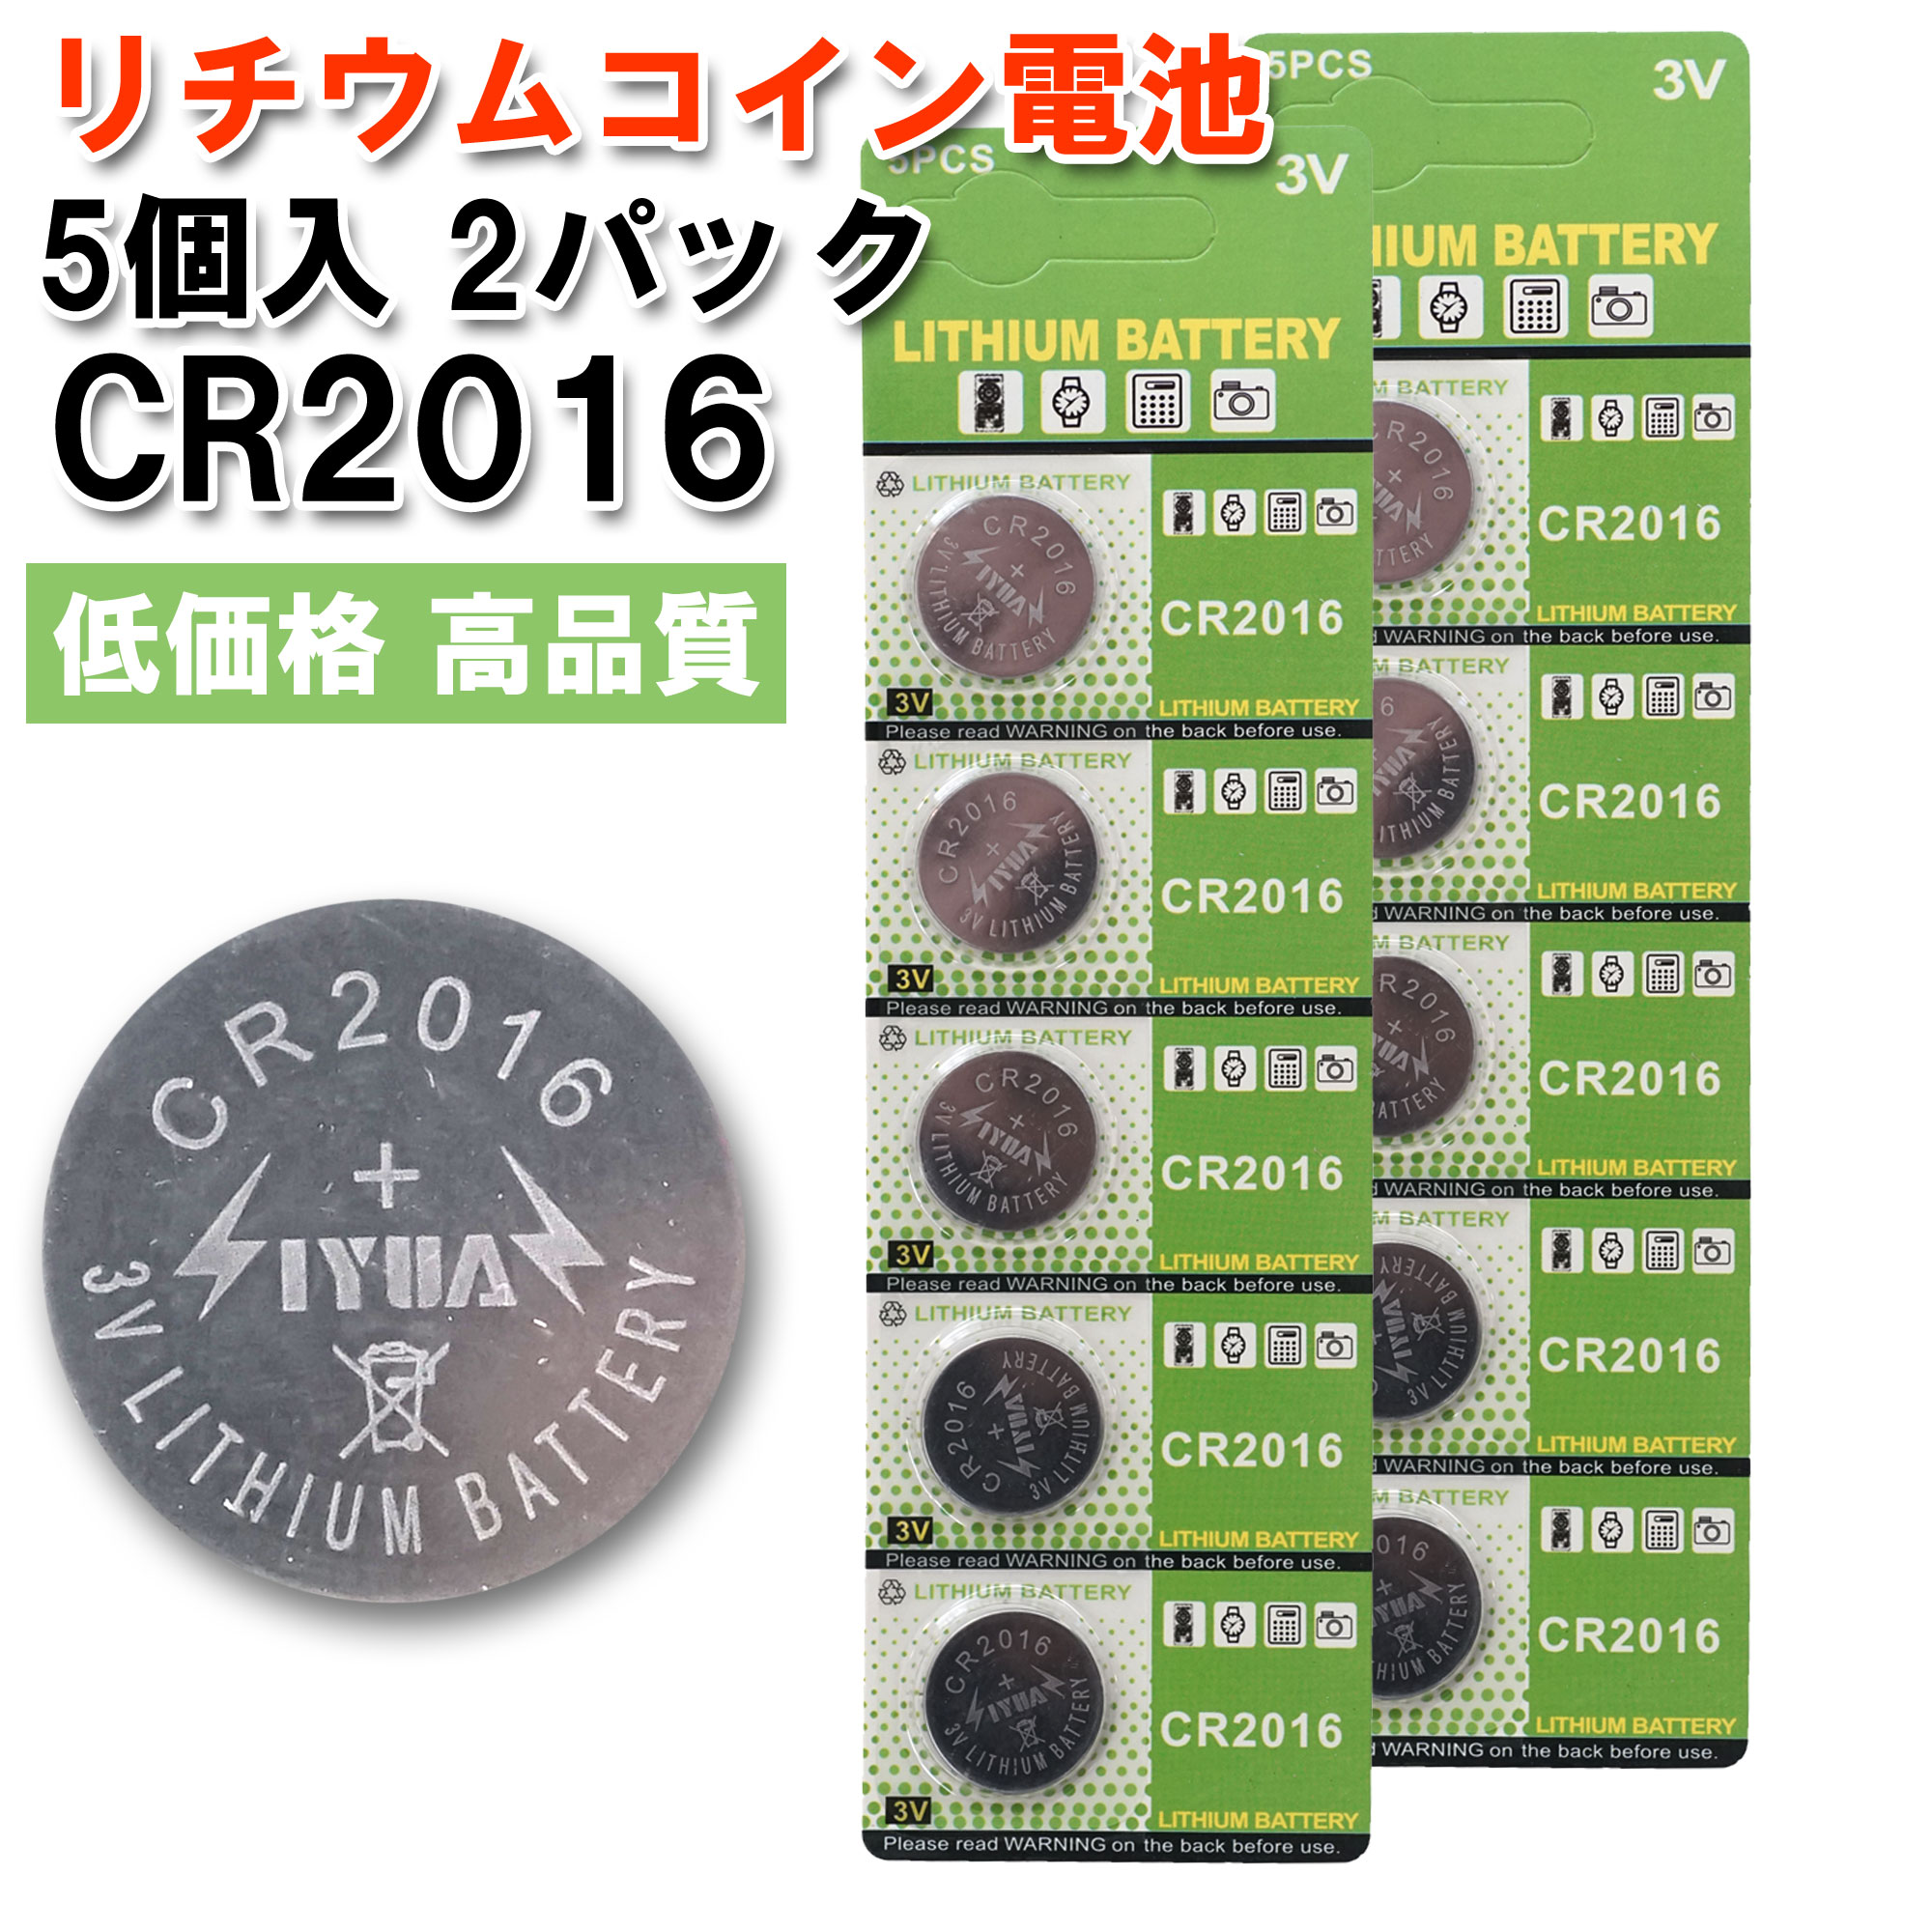 信託 CR2016 リチウムコイン電池 2個 TH discoversvg.com